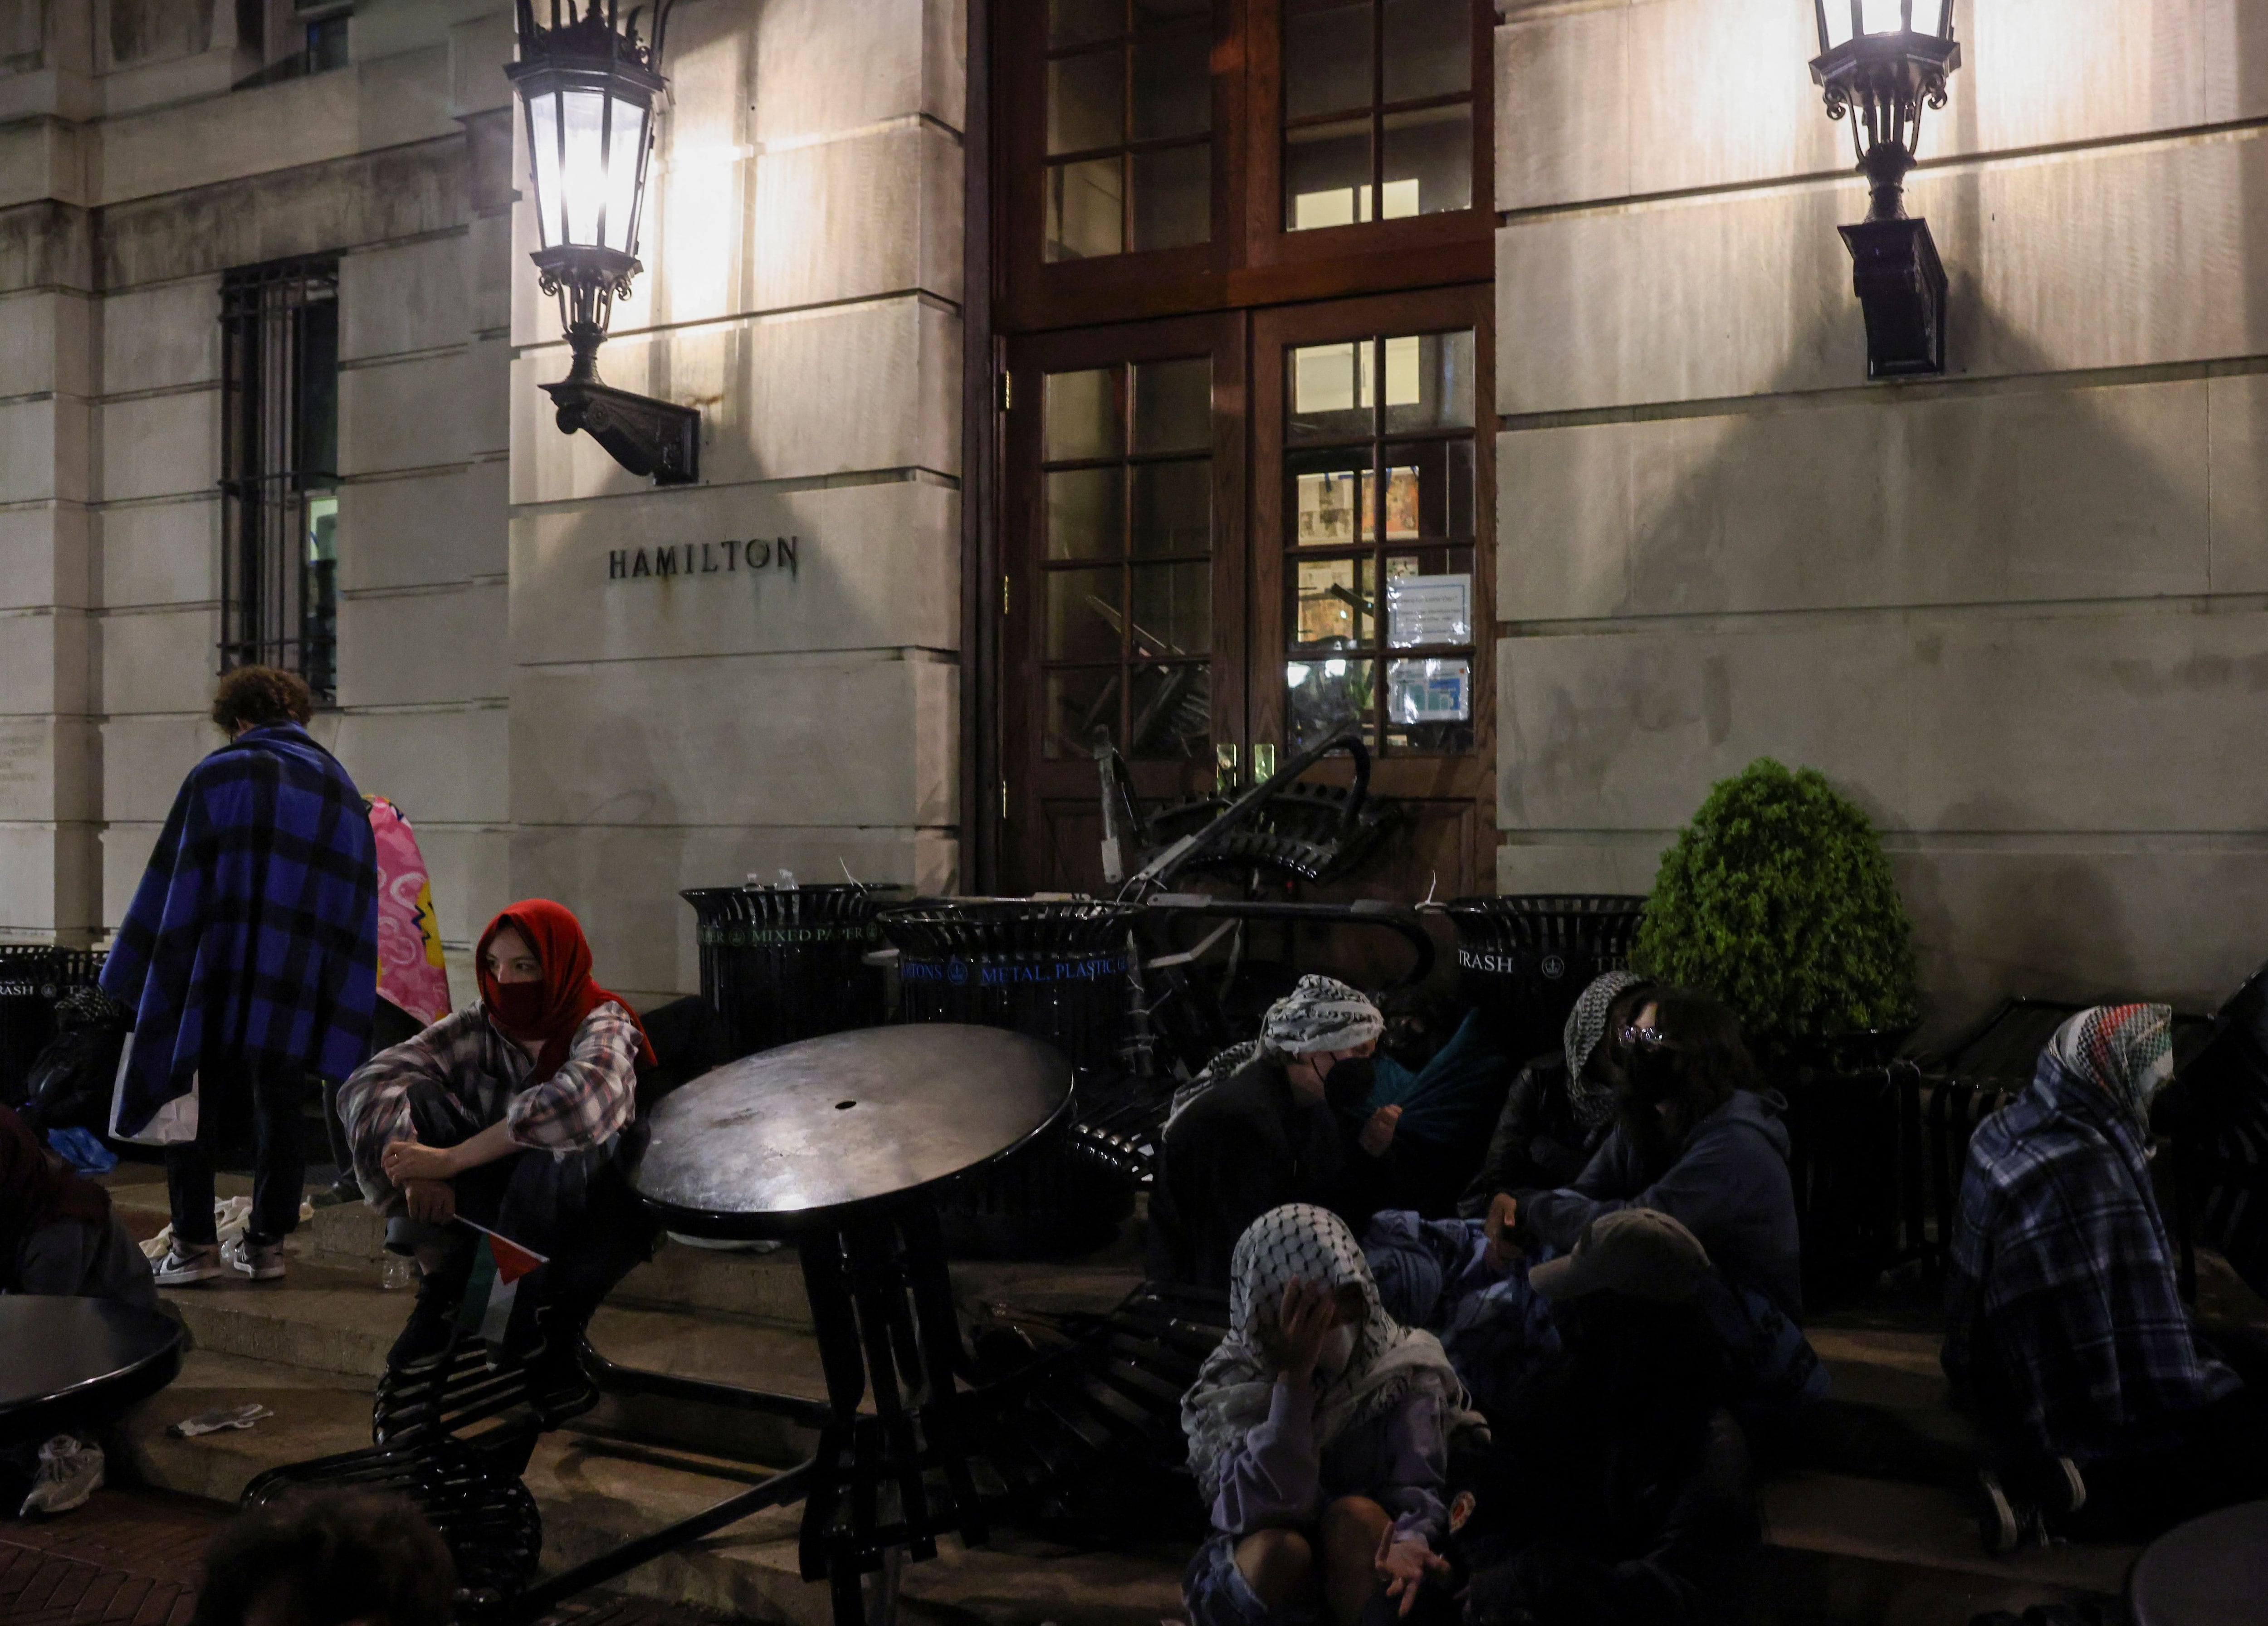 Los manifestantes cargaron muebles y barricadas de metal hasta el edificio (REUTERS/Caitlin Ochs)